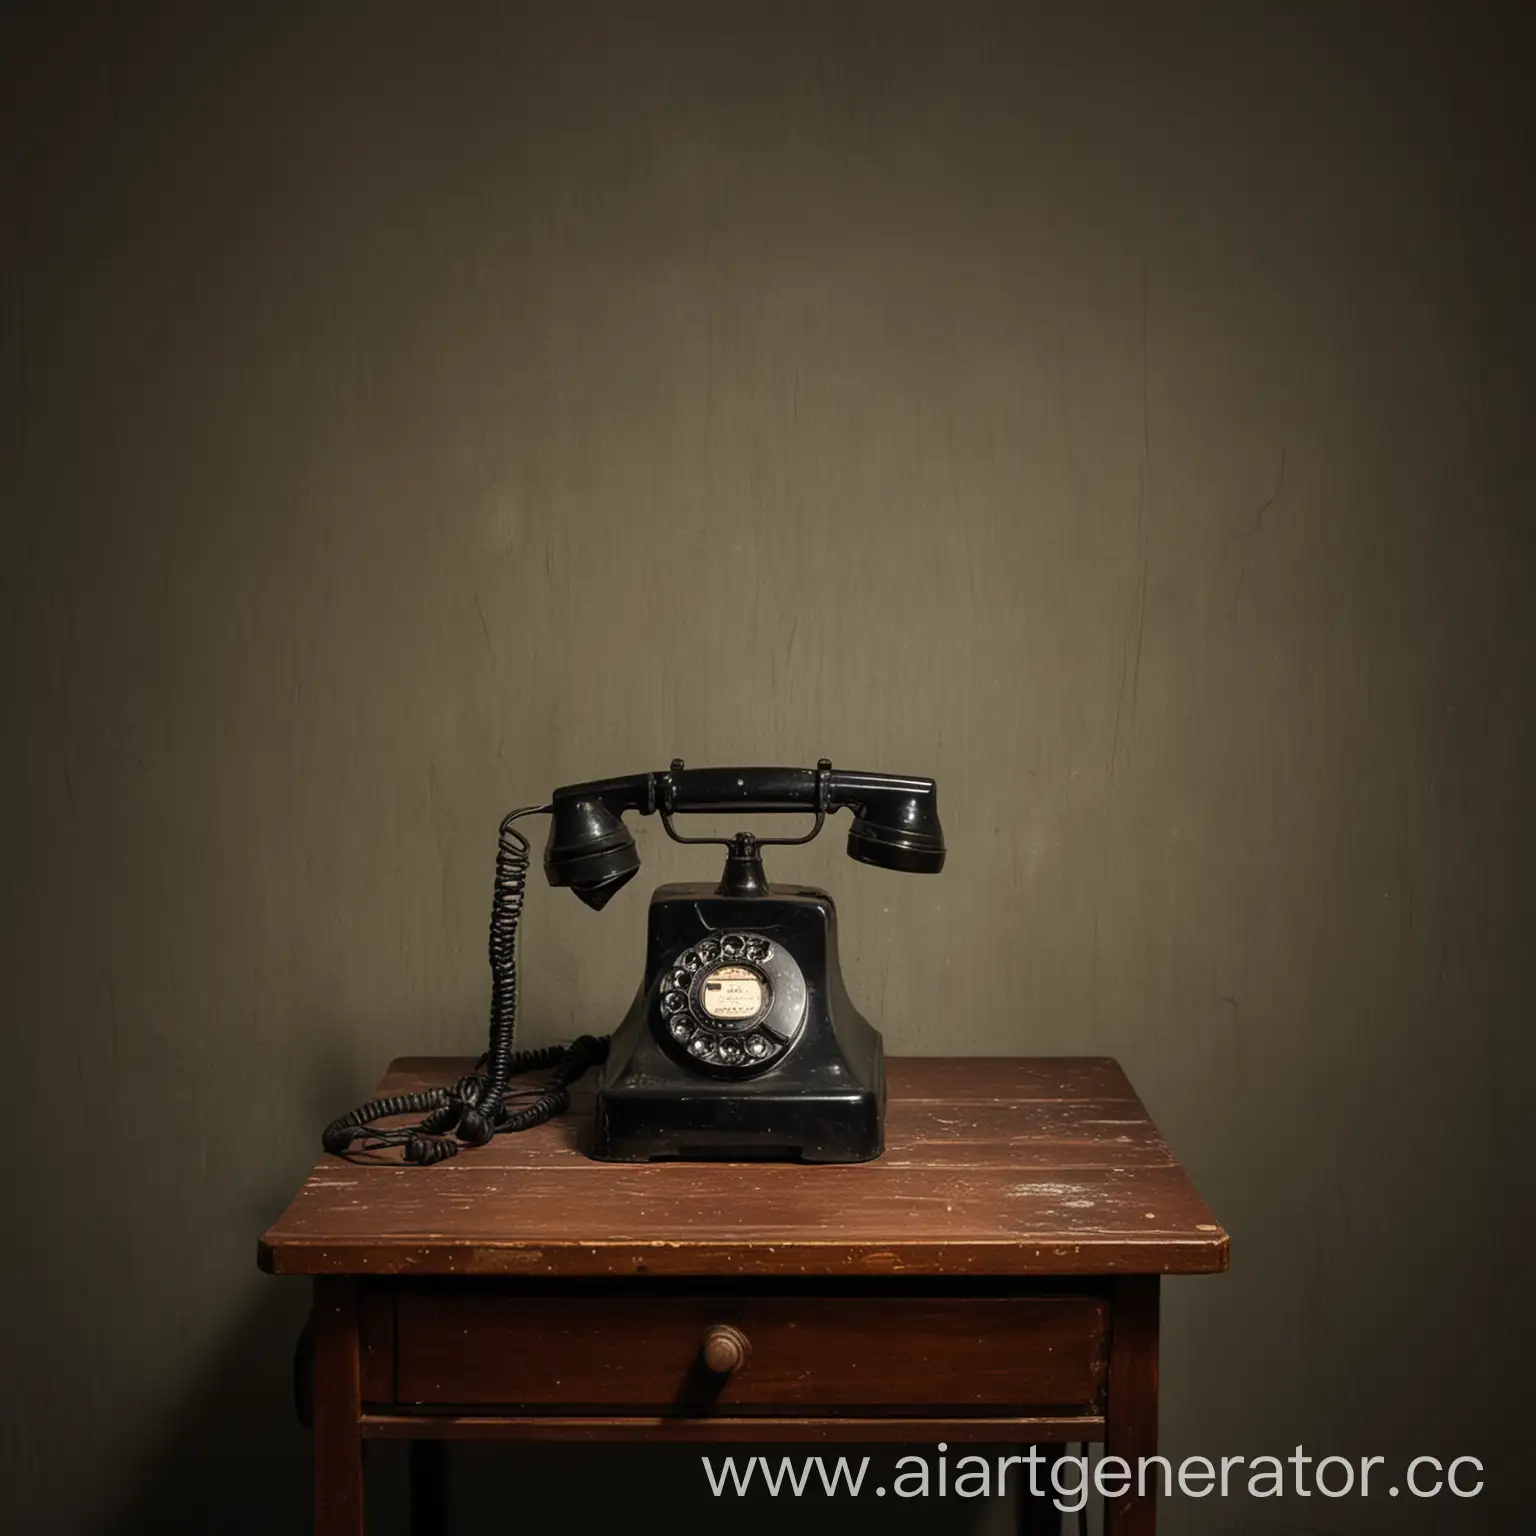 Vintage-Telephone-Illuminated-on-Dark-Room-Table